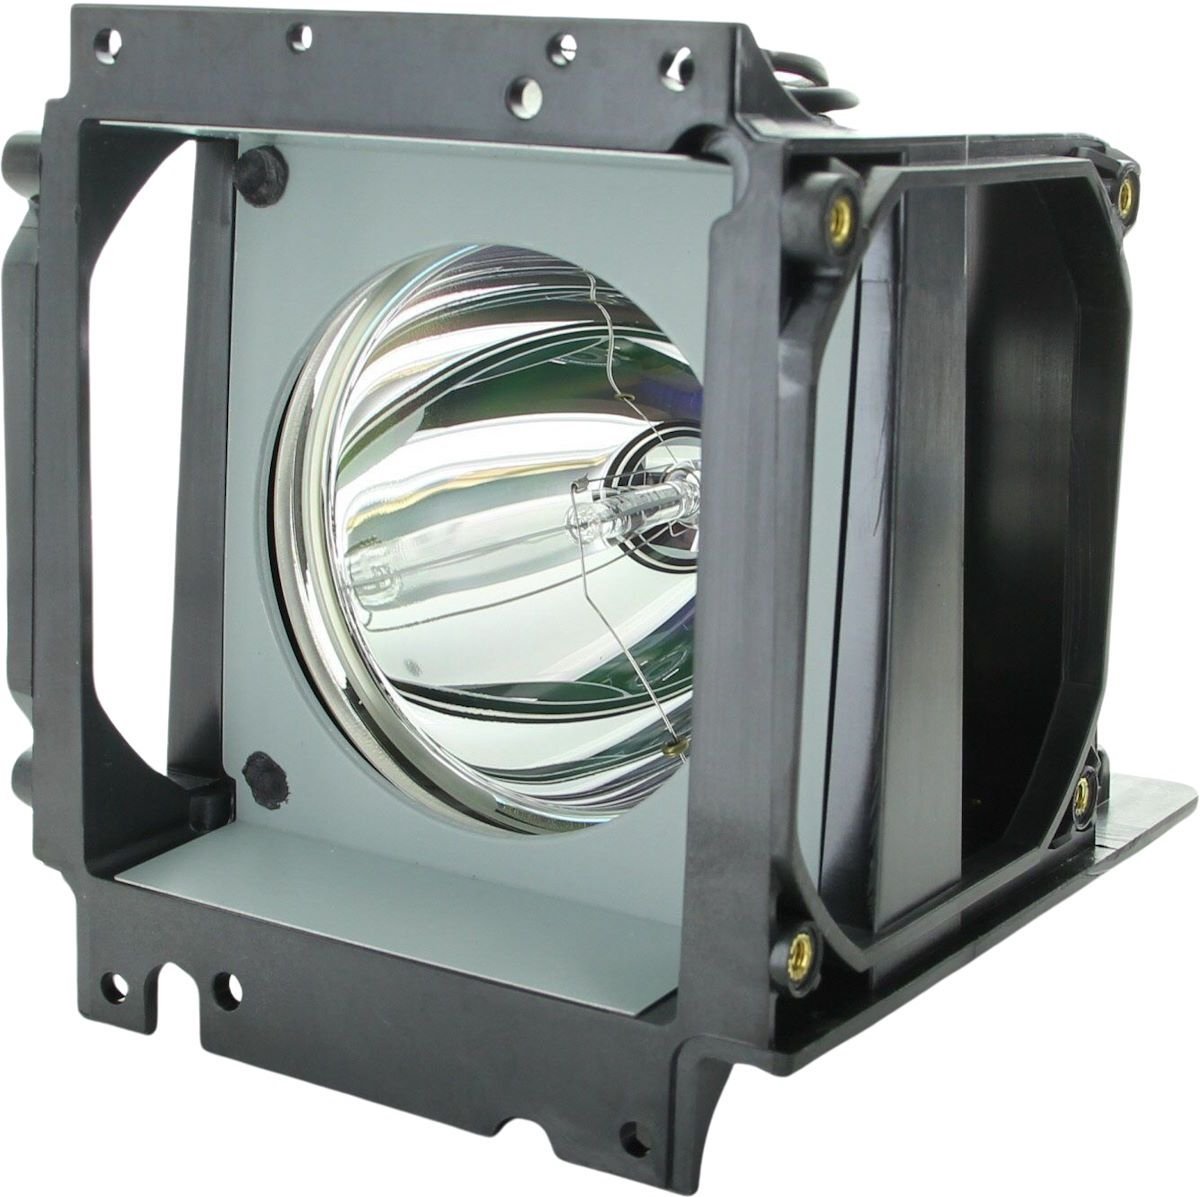 Beamerlamp geschikt voor de PLANAR Clarity c67RP beamer, lamp code 150-0142 / 151-0005 / 151-1063. Bevat originele P-VIP lamp, prestaties gelijk aan origineel.